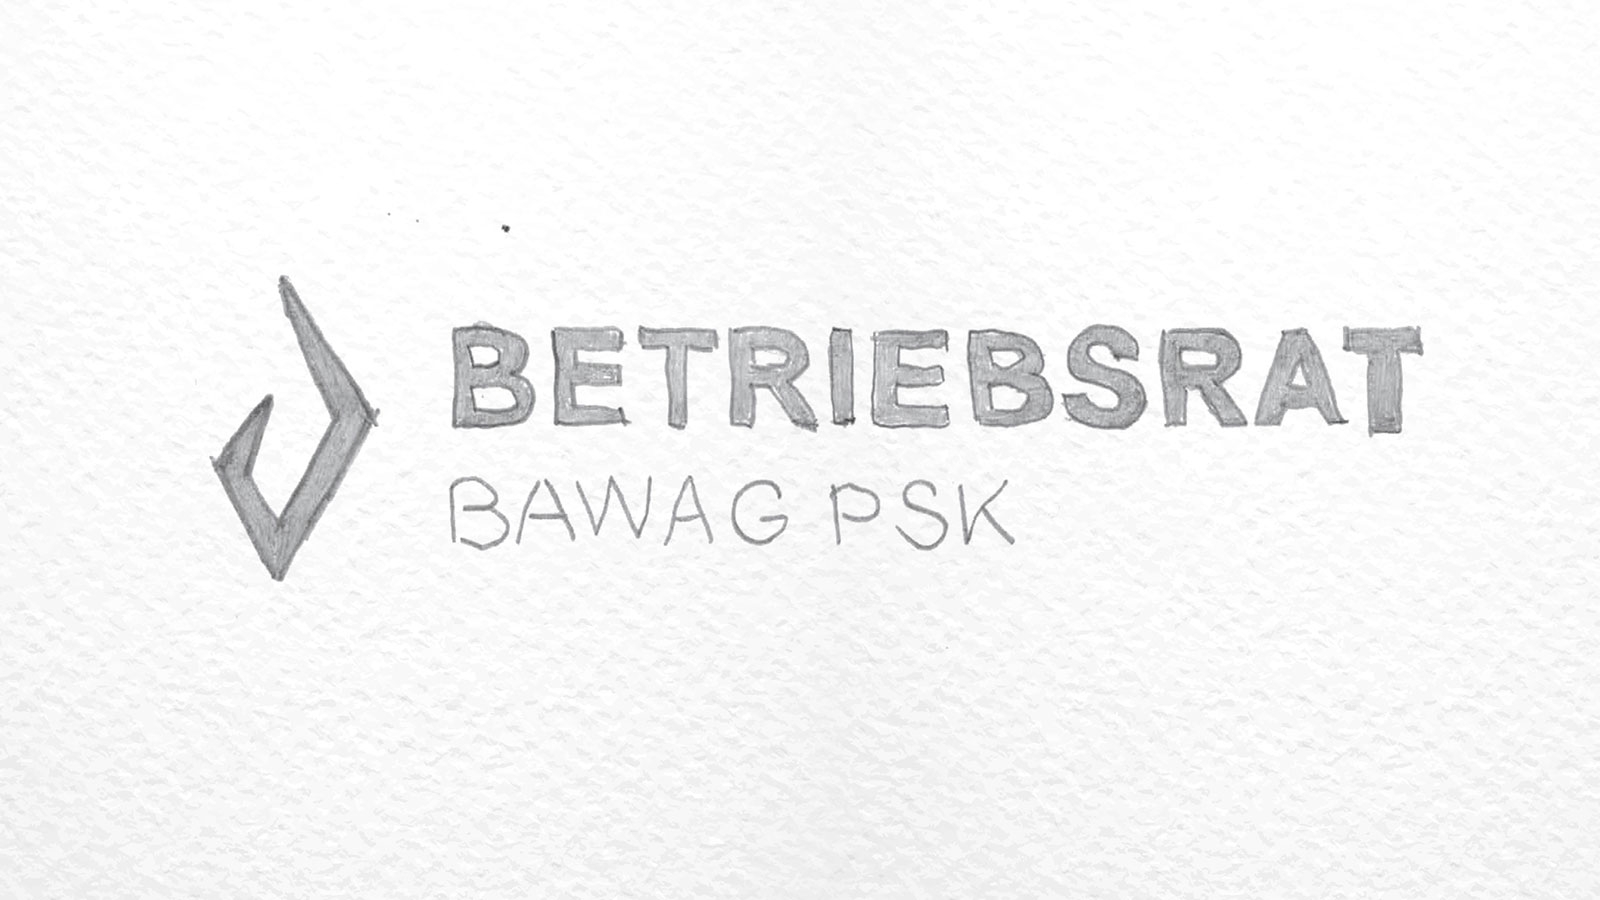 BAWAG PSK Betriebsrat | bawagpsk-betriebsrat.at | 2017 (Logo Scrbible 02) © echonet communication